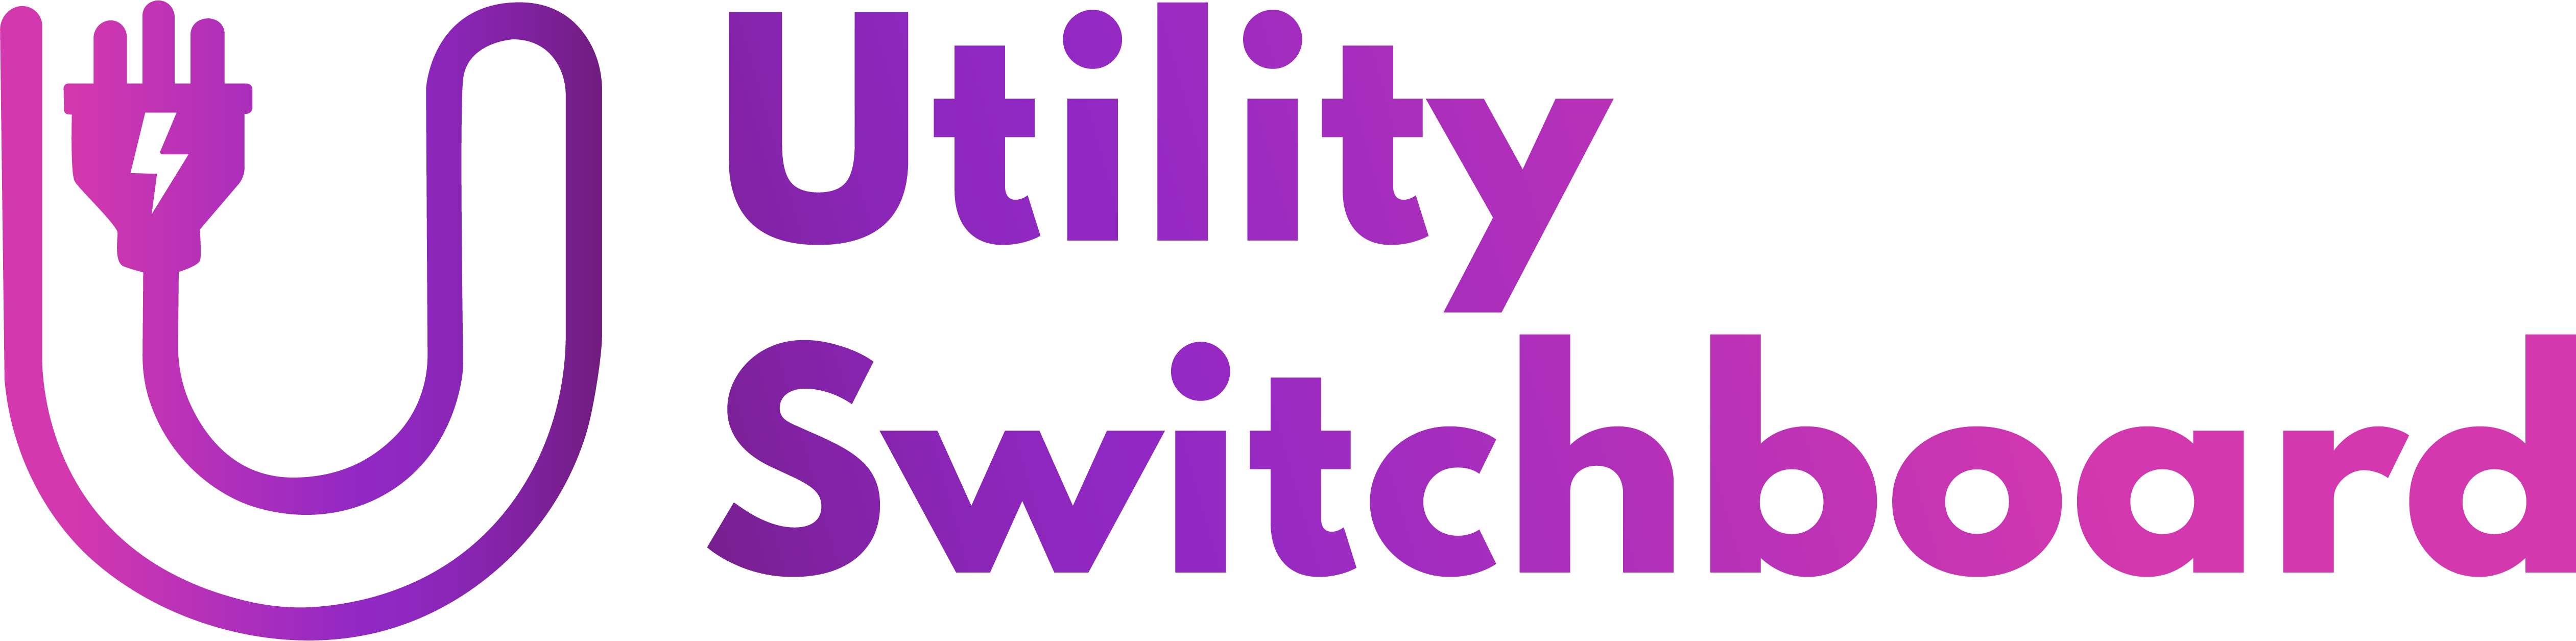 Utility Switchboard logo